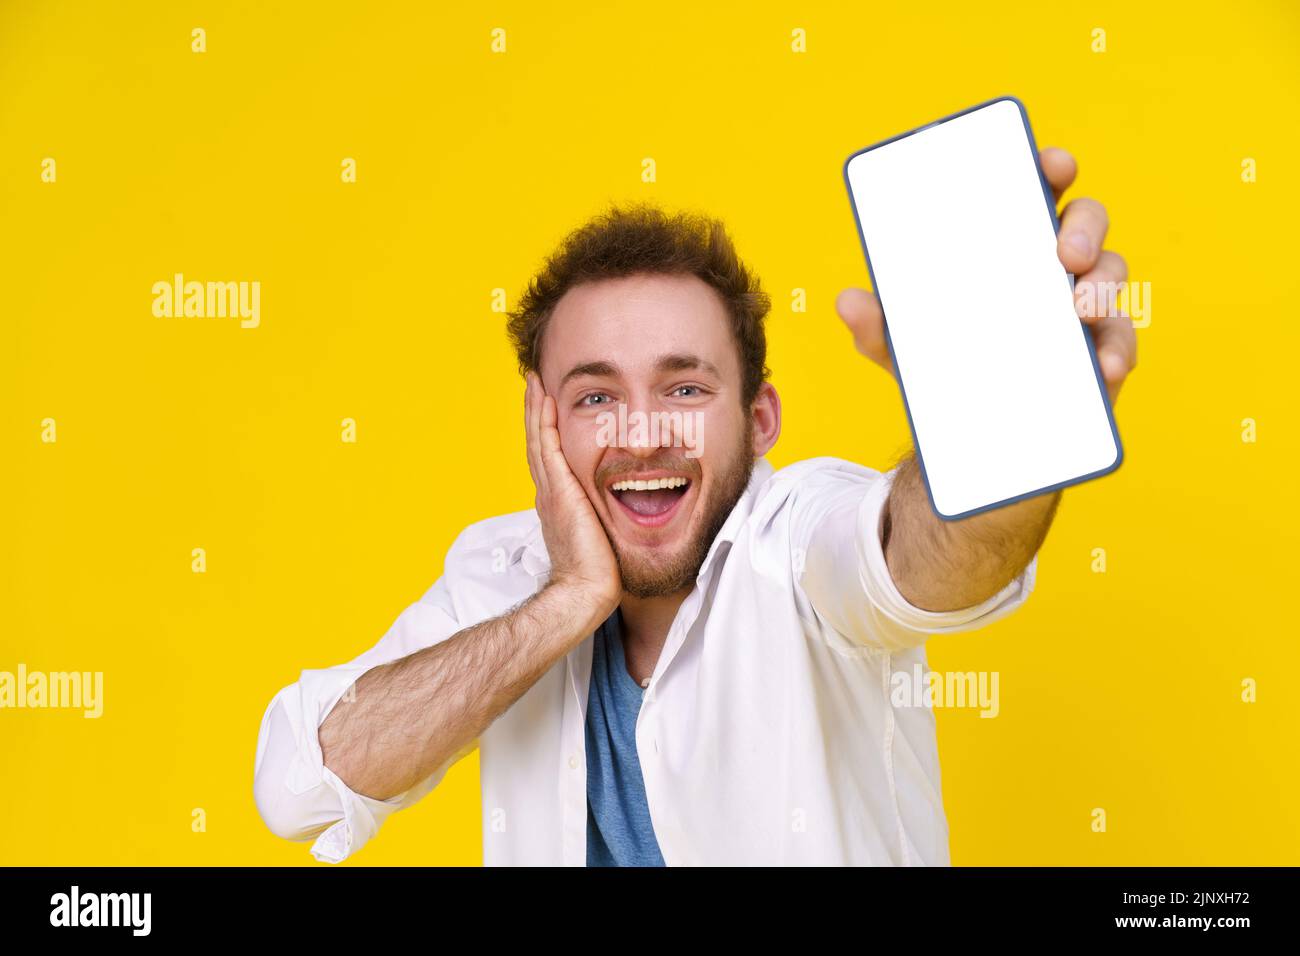 Ottima offerta. Giovane uomo felice che tiene uno smartphone che mostra uno schermo bianco vuoto ed emozionante vincere isolato su sfondo giallo, celebrando il successo. Posizionamento del prodotto. Pubblicità tramite app mobile. Foto Stock